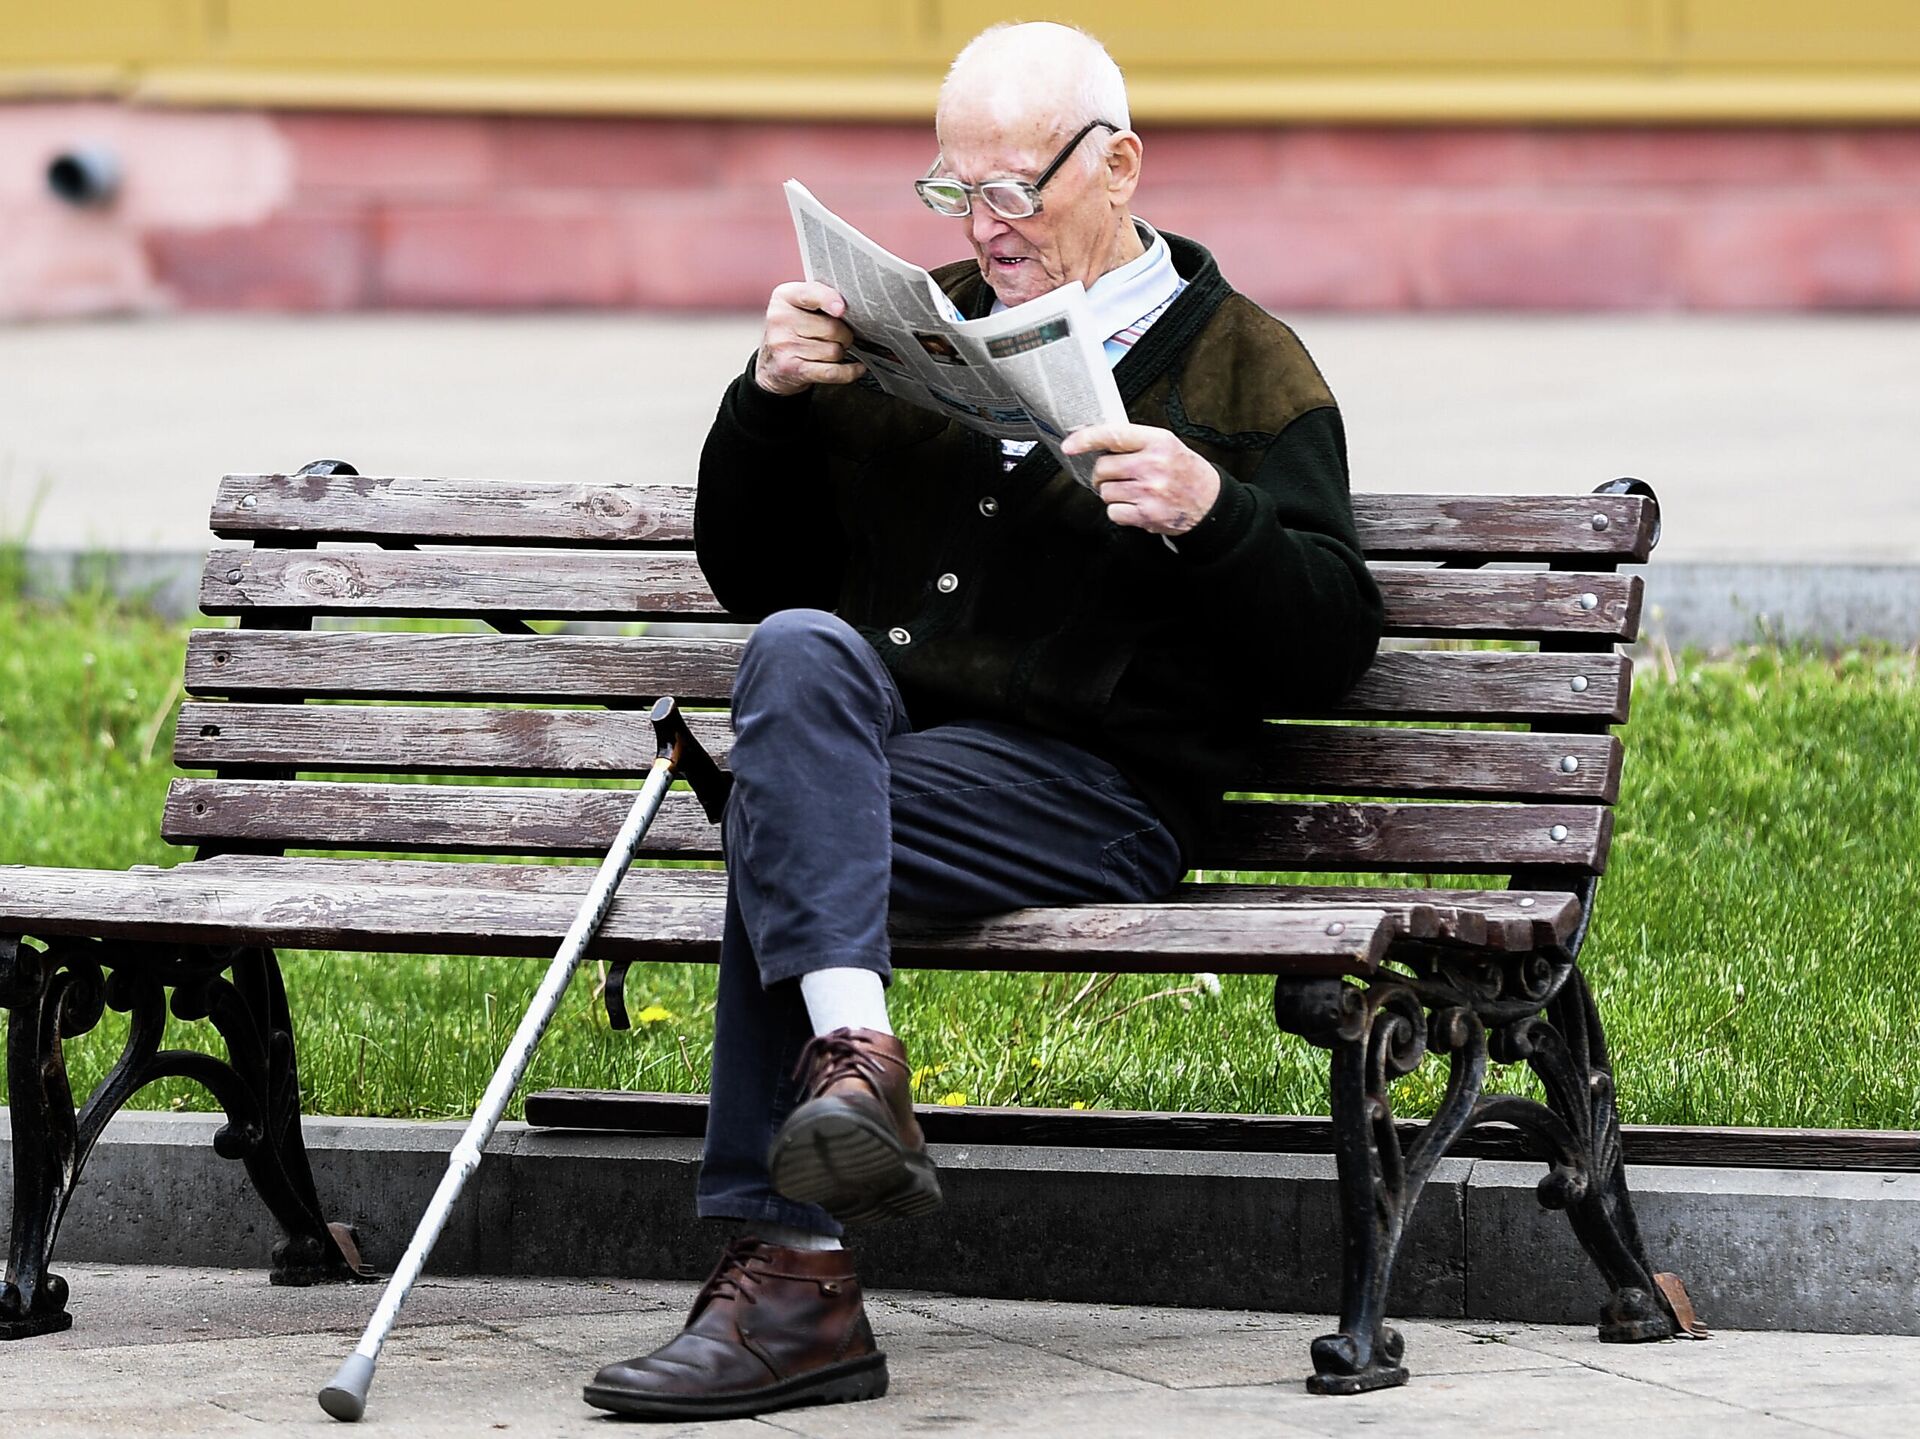 Читать пенсионер. Пенсионеры на лавочке. Пенсионеры на скамейке. Пожилые люди на скамейке. Пенсионерки на лавочке.